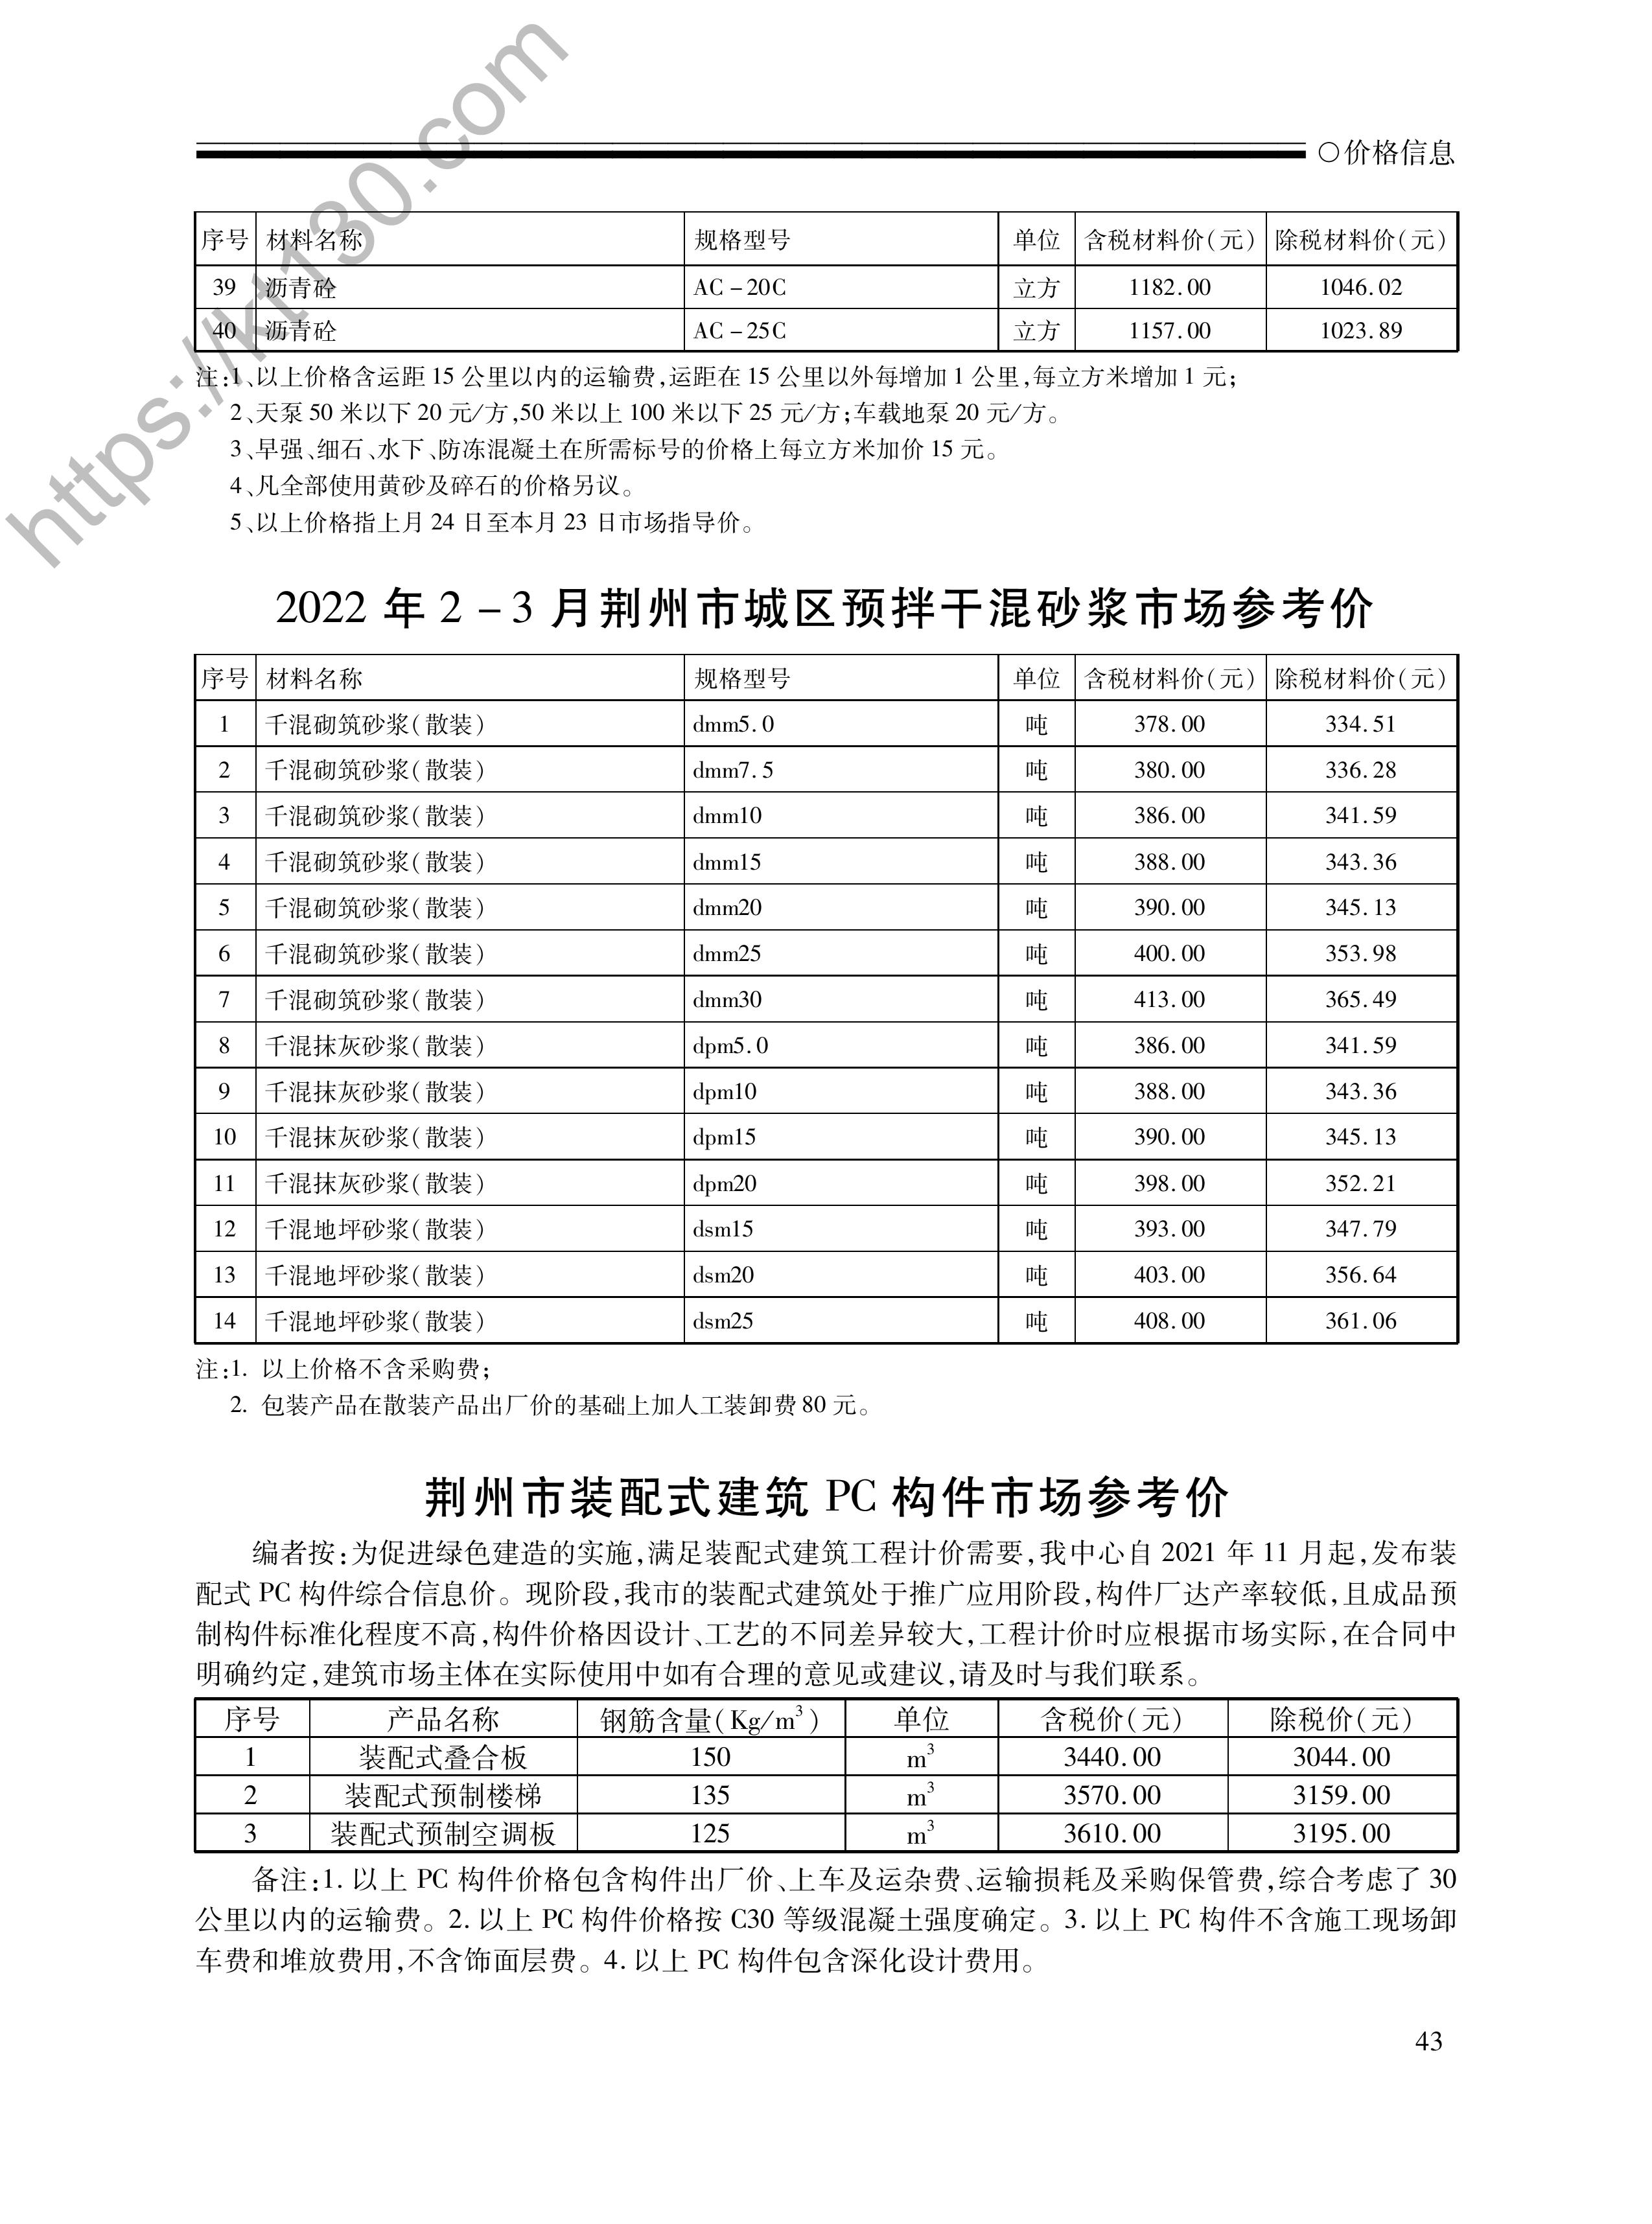 荆州市2022年2-3月建筑材料价_预拌干混砂浆_45838